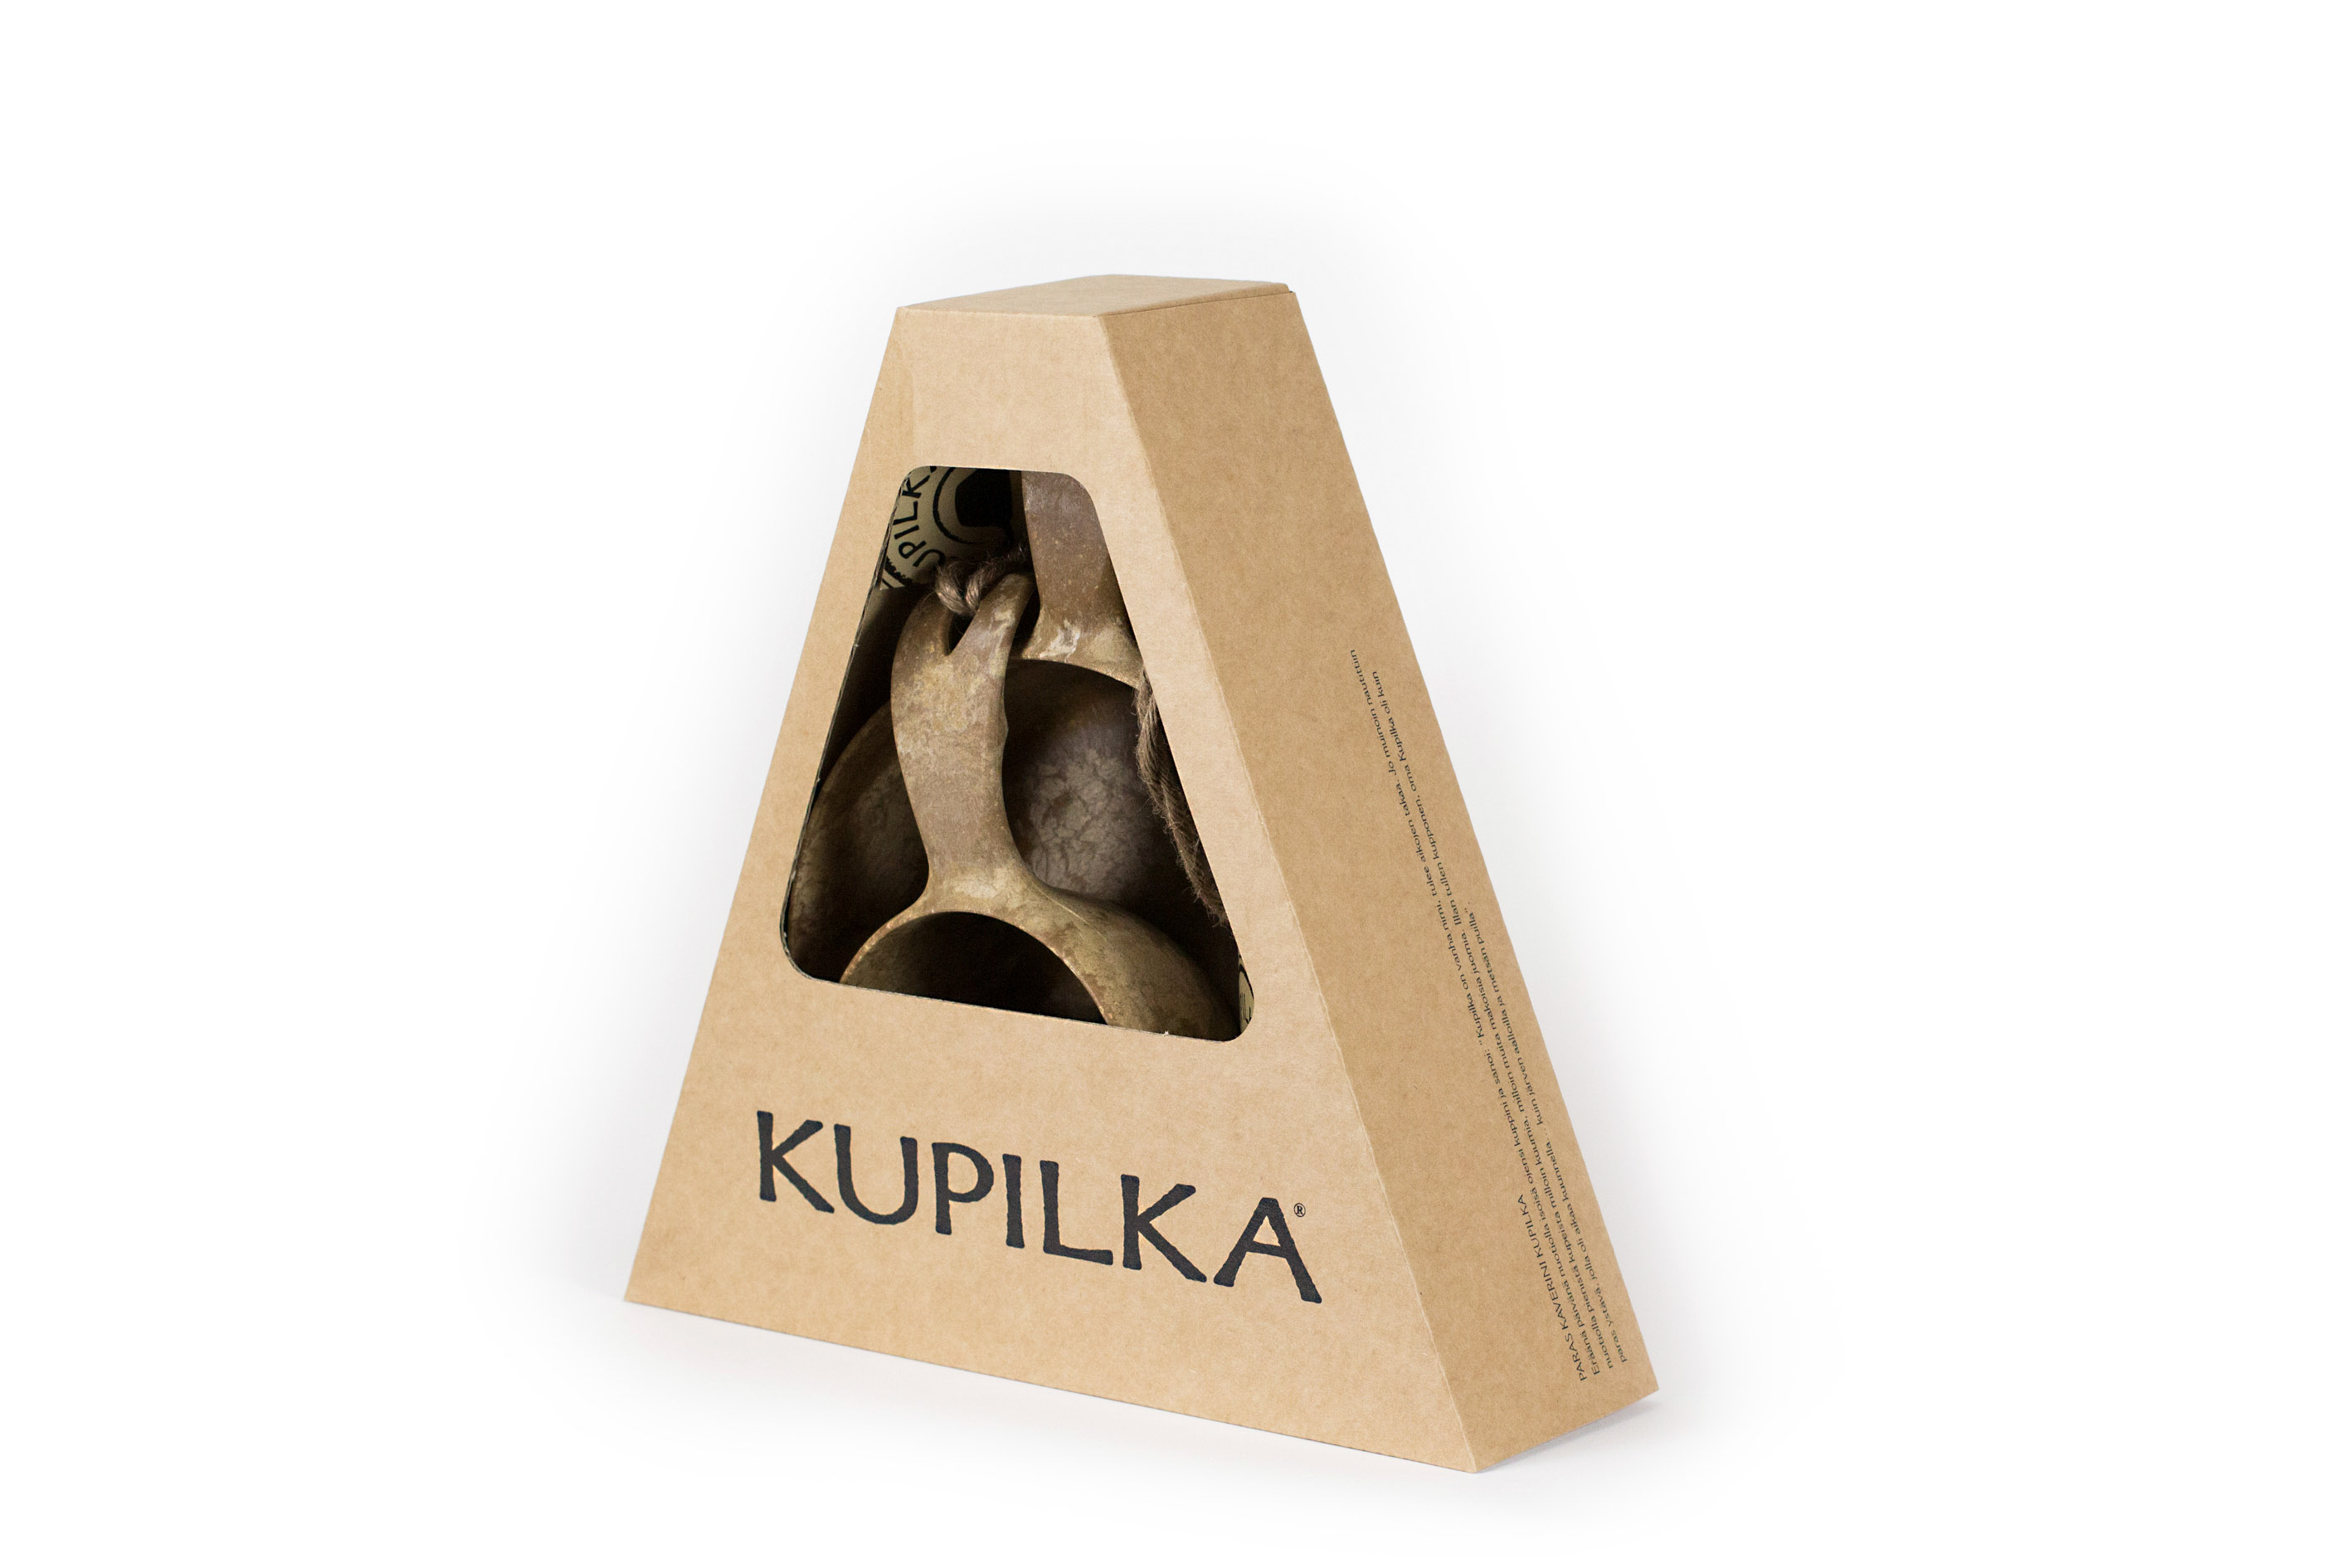 Set de 4 couverts Kupilka noir en bois finlandais écologique et recyclable